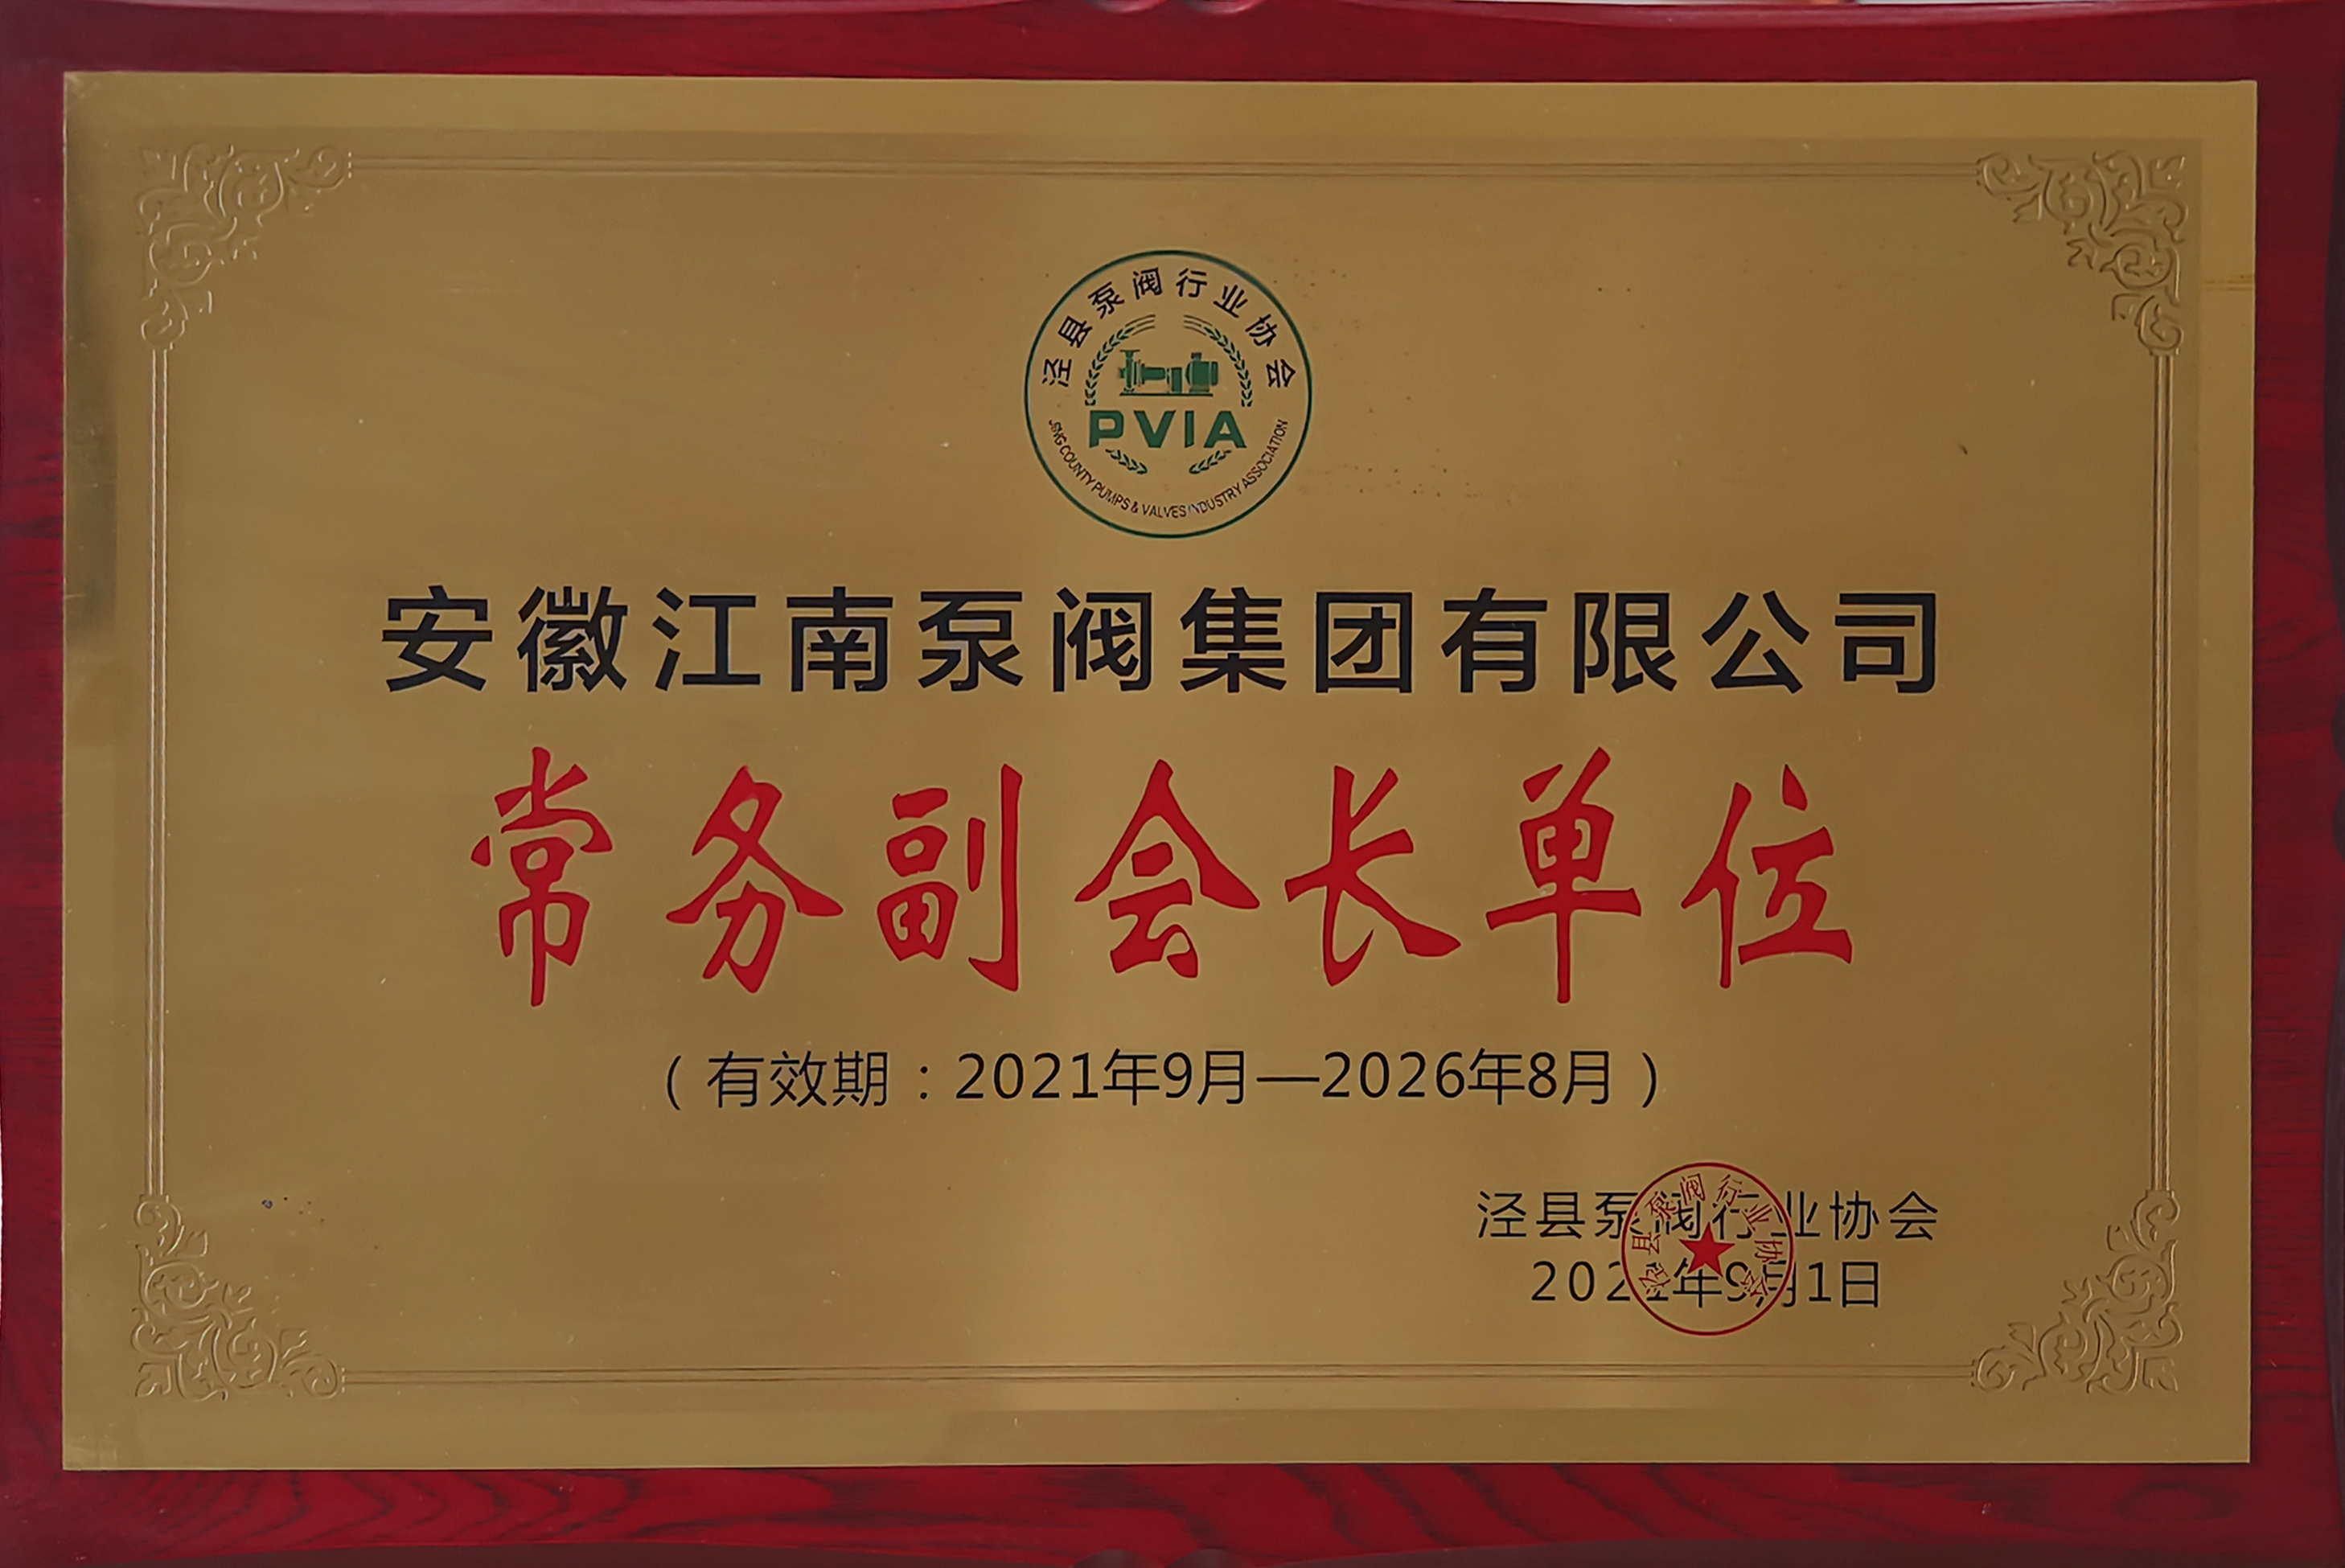 安徽江南泵阀集团有限公司获得“常务副会长单位”授牌